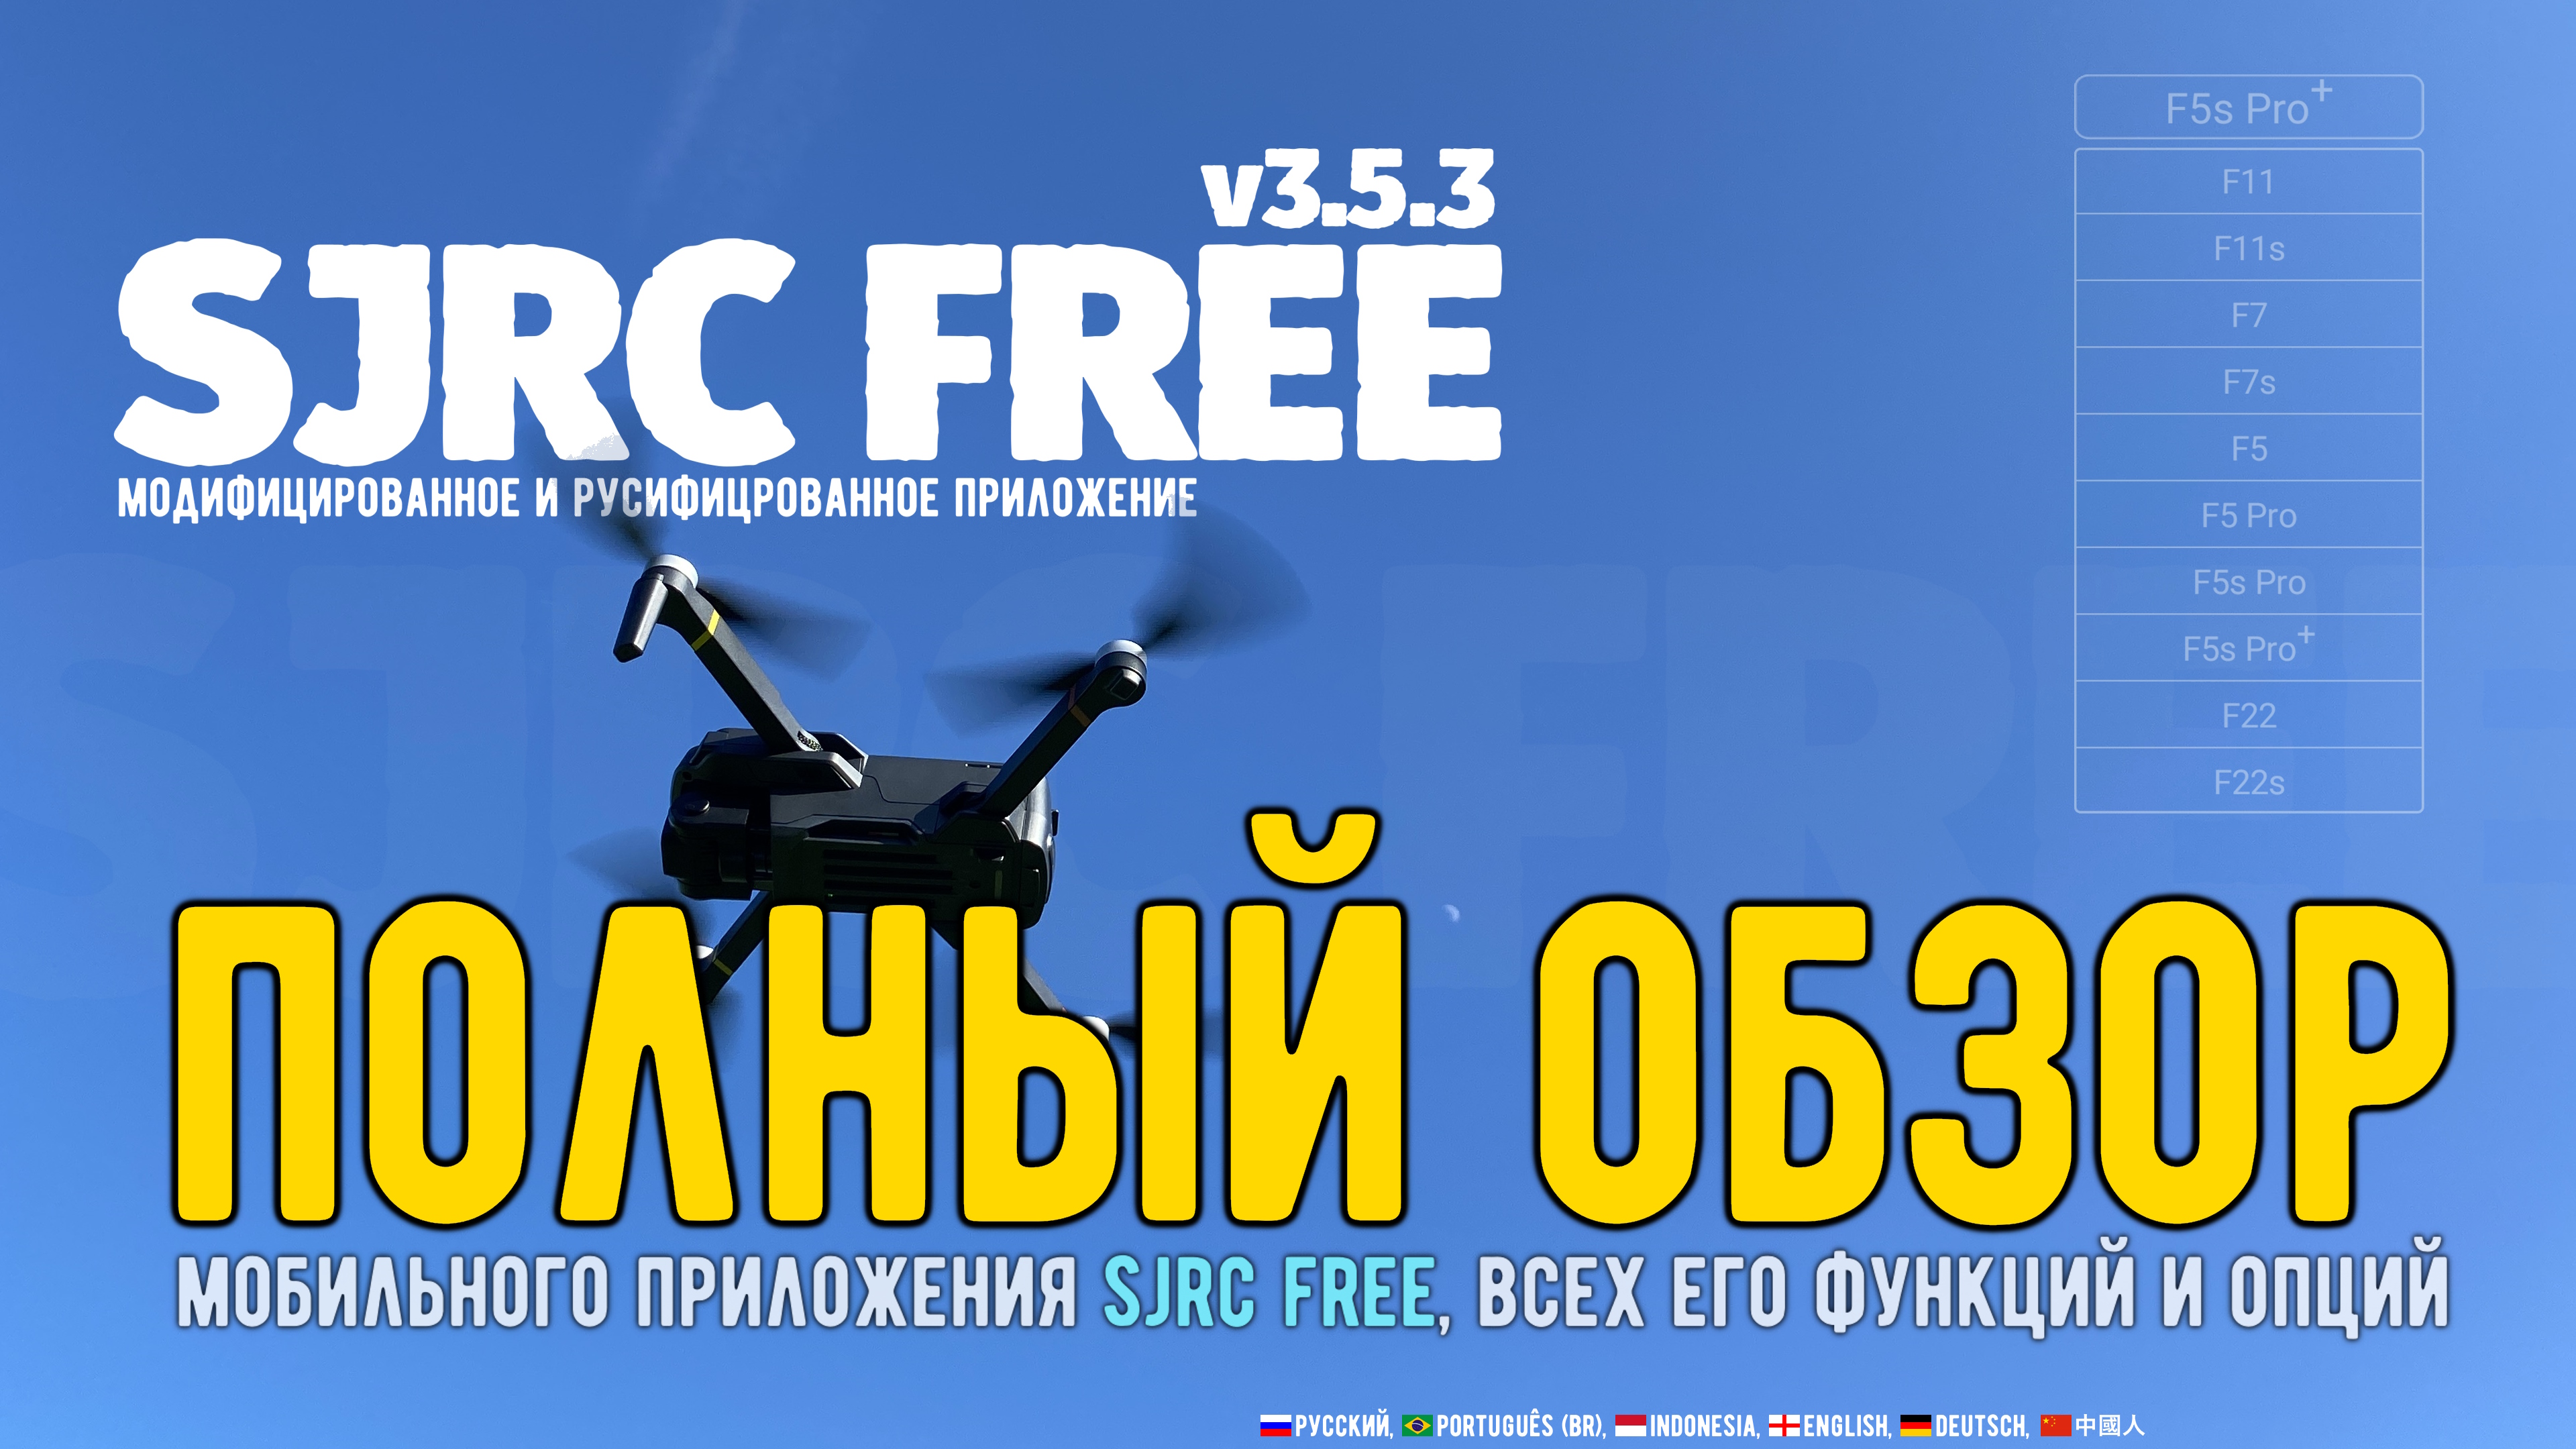 Полный обзор мобильного приложения SJRC FREE v3.5.3